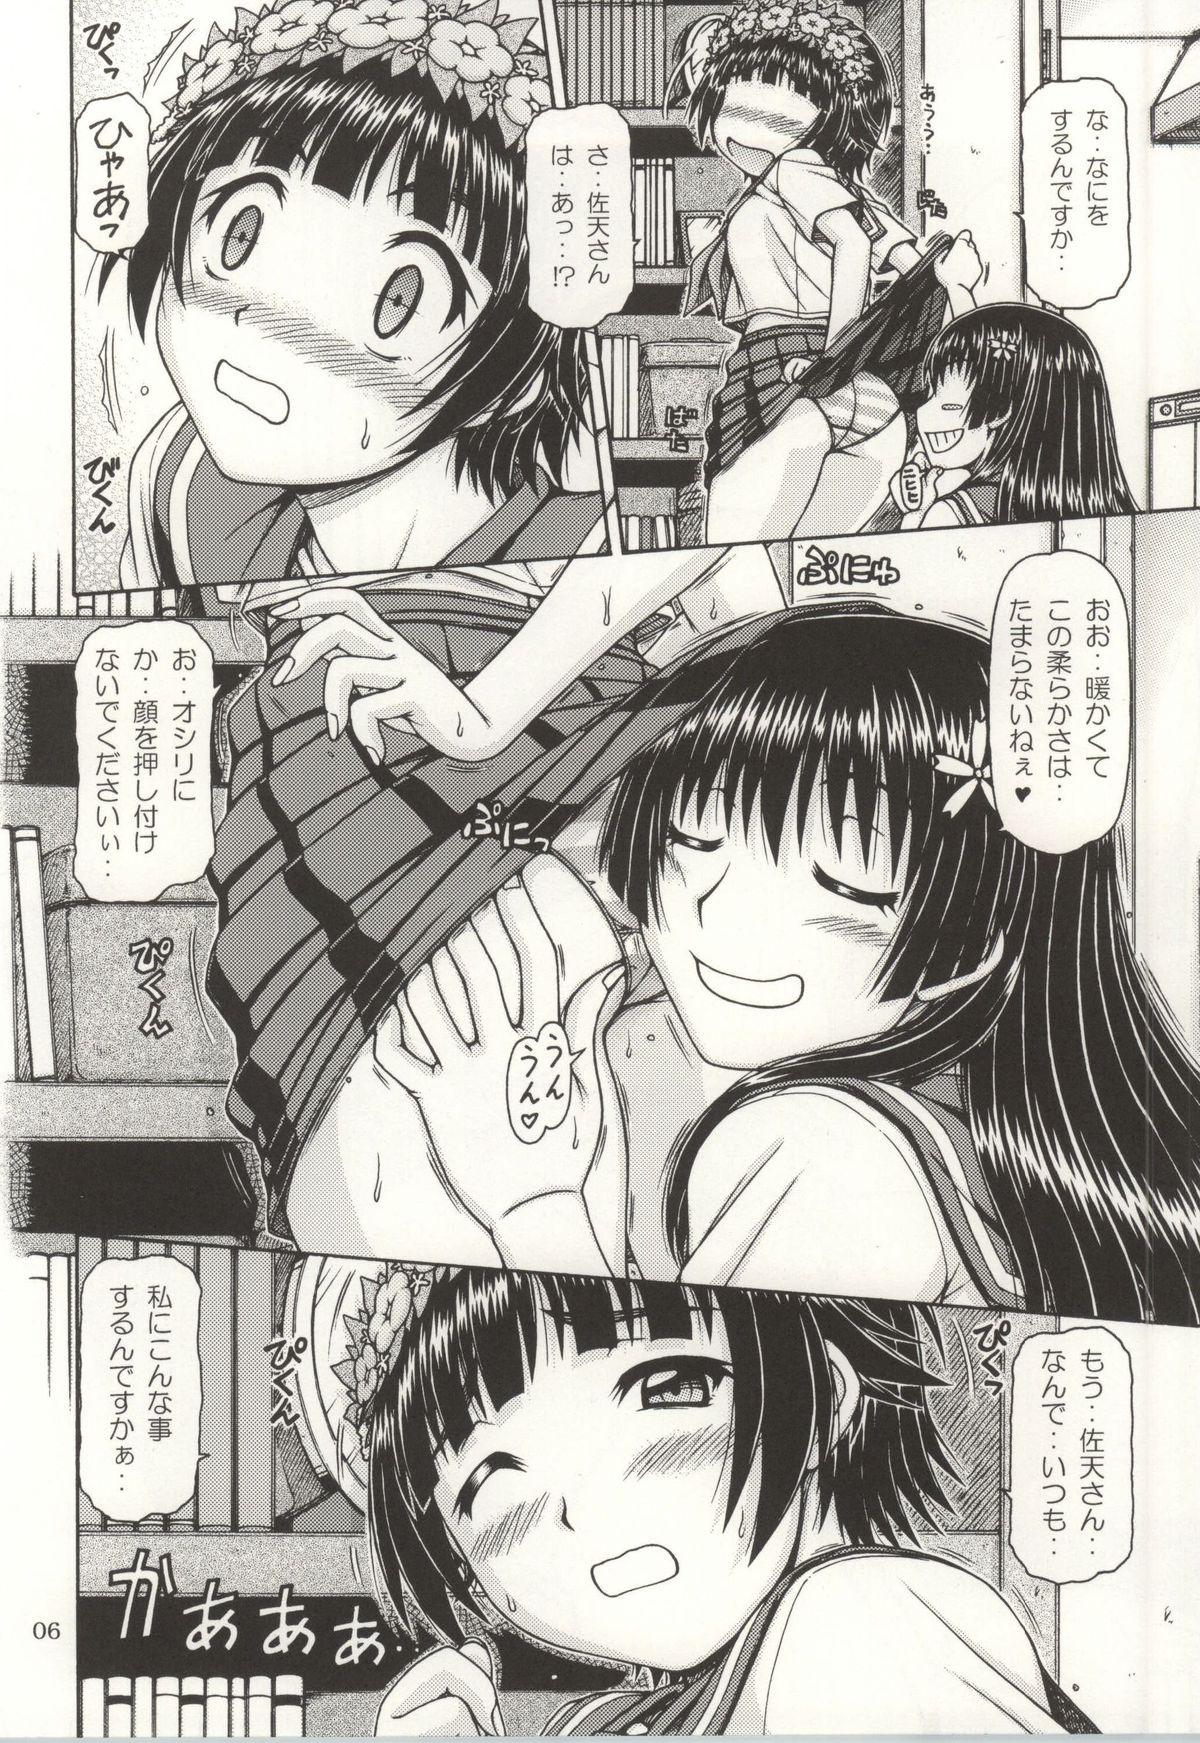 Teen Fuck ONE-SEVEN+ Vol.01 - Toaru kagaku no railgun Toaru majutsu no index Penetration - Page 4